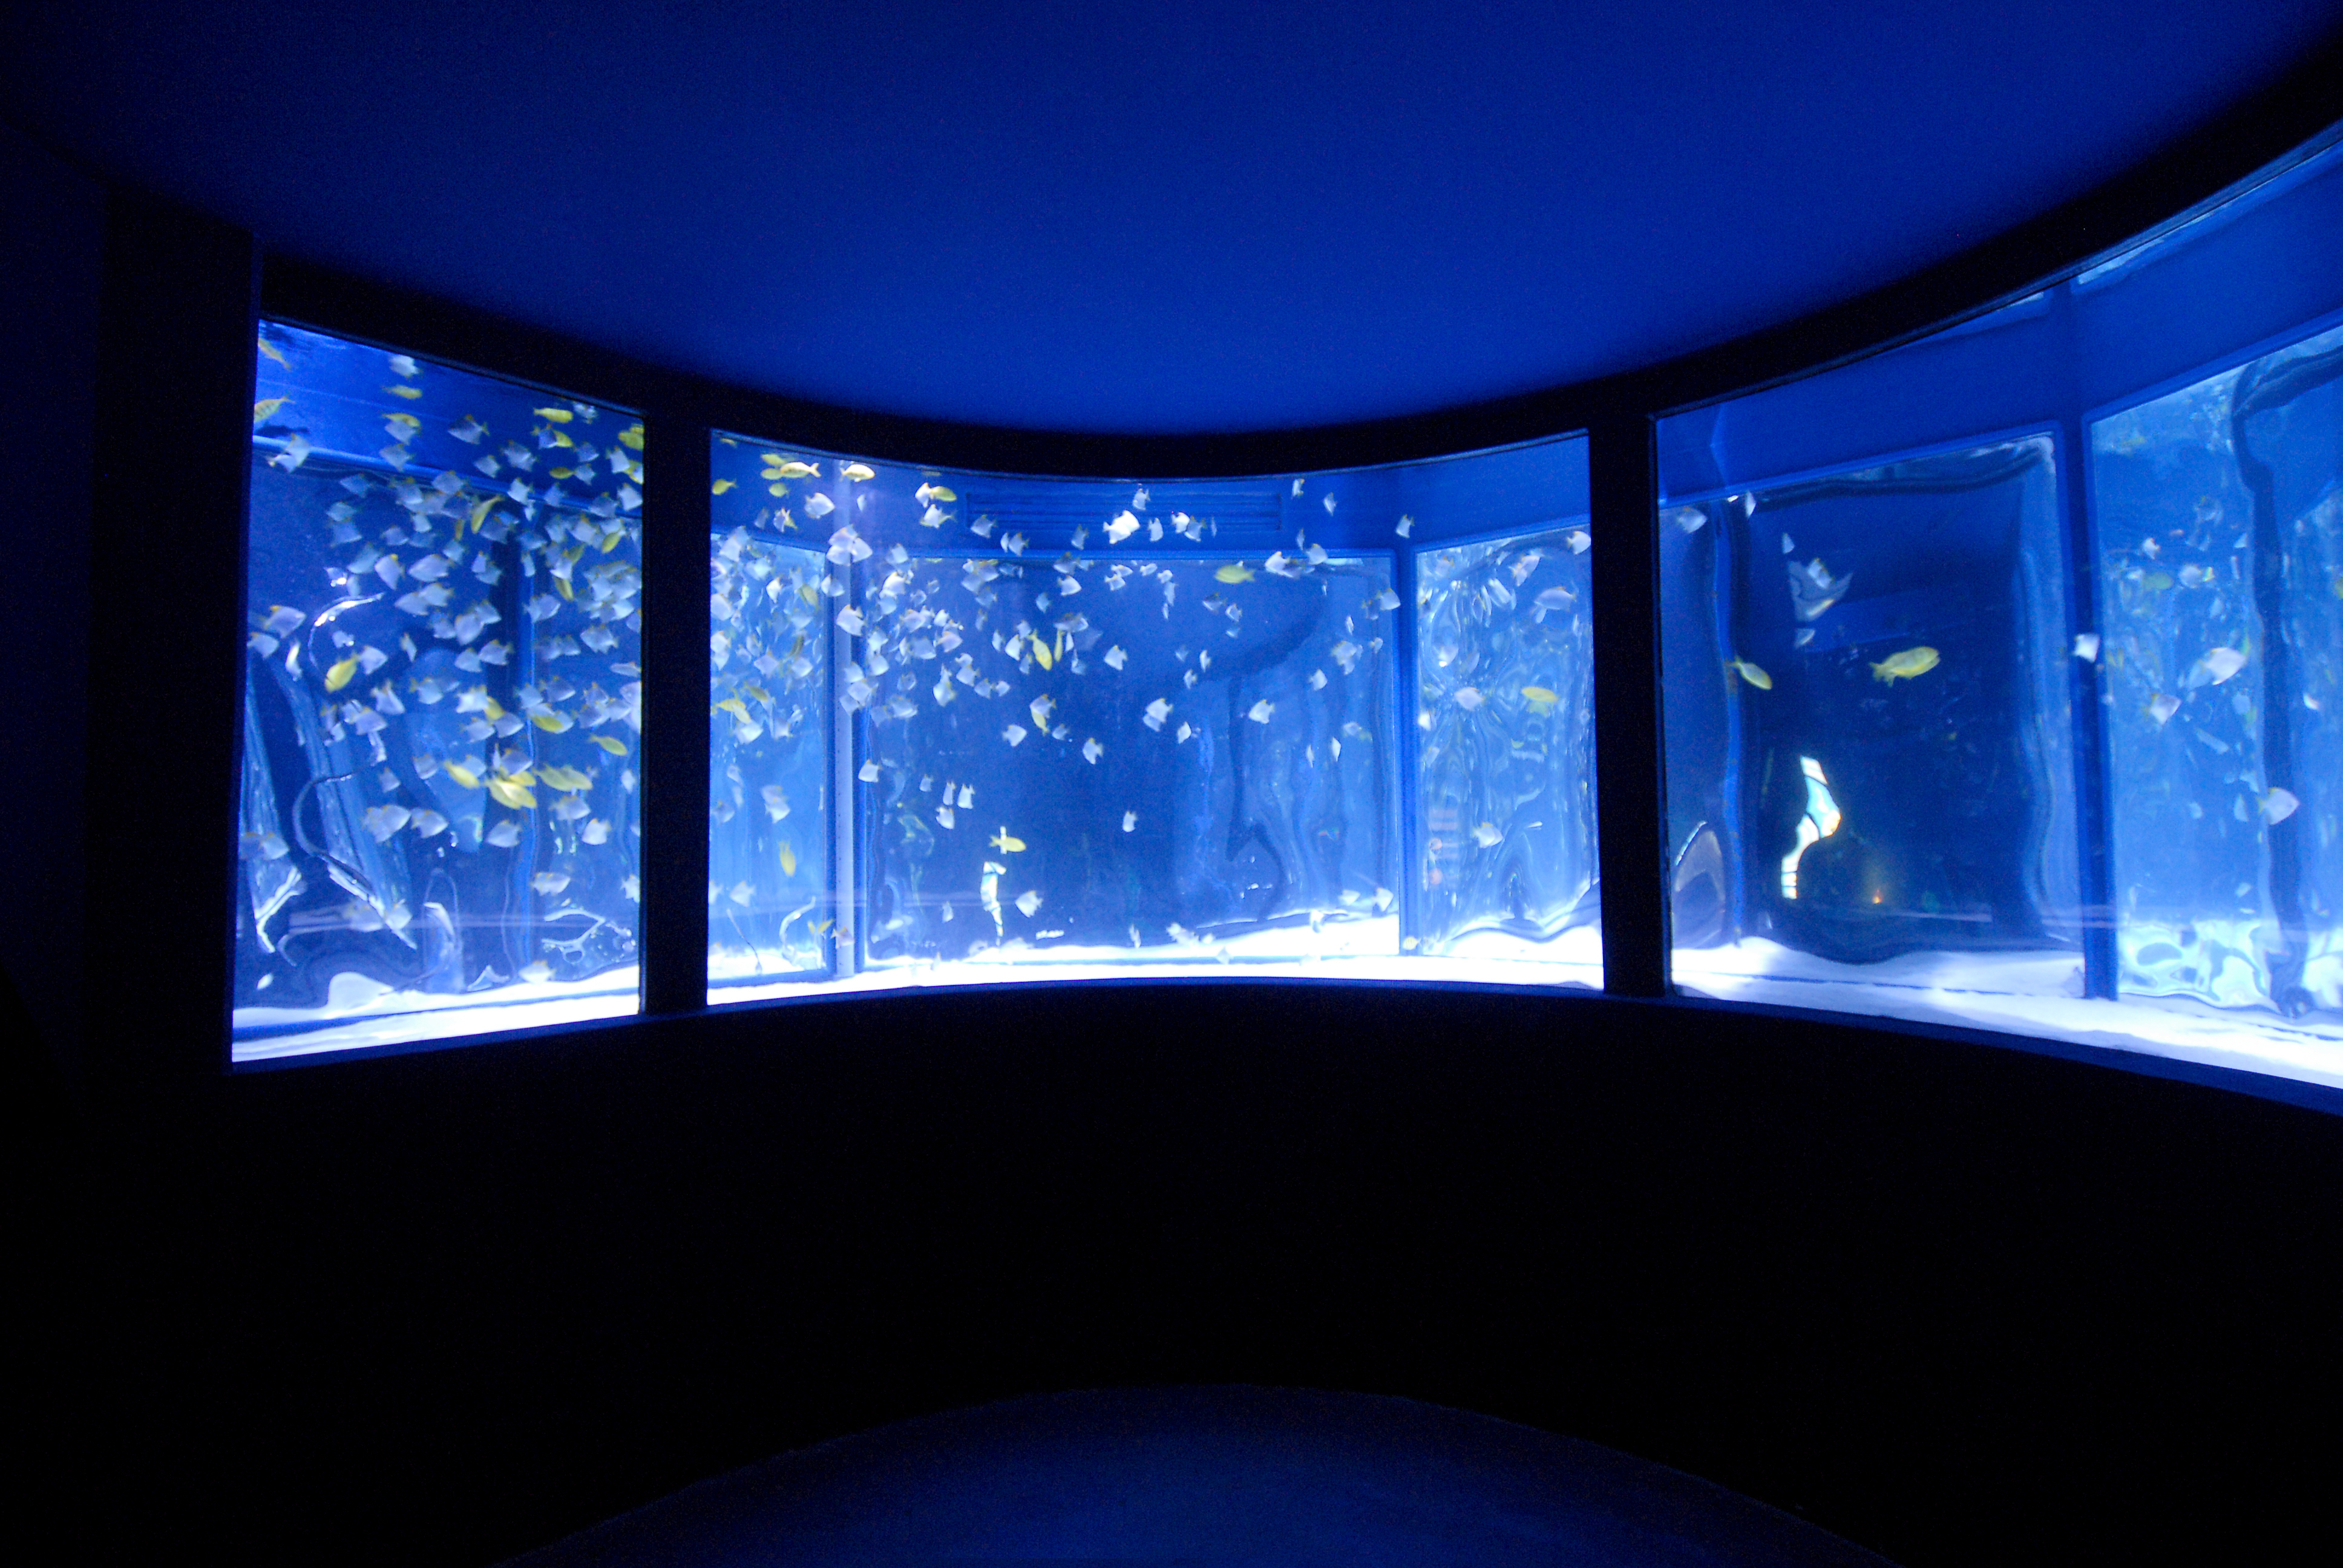 Gardaland SEA LIFE Aquarium - Vasca ad anello